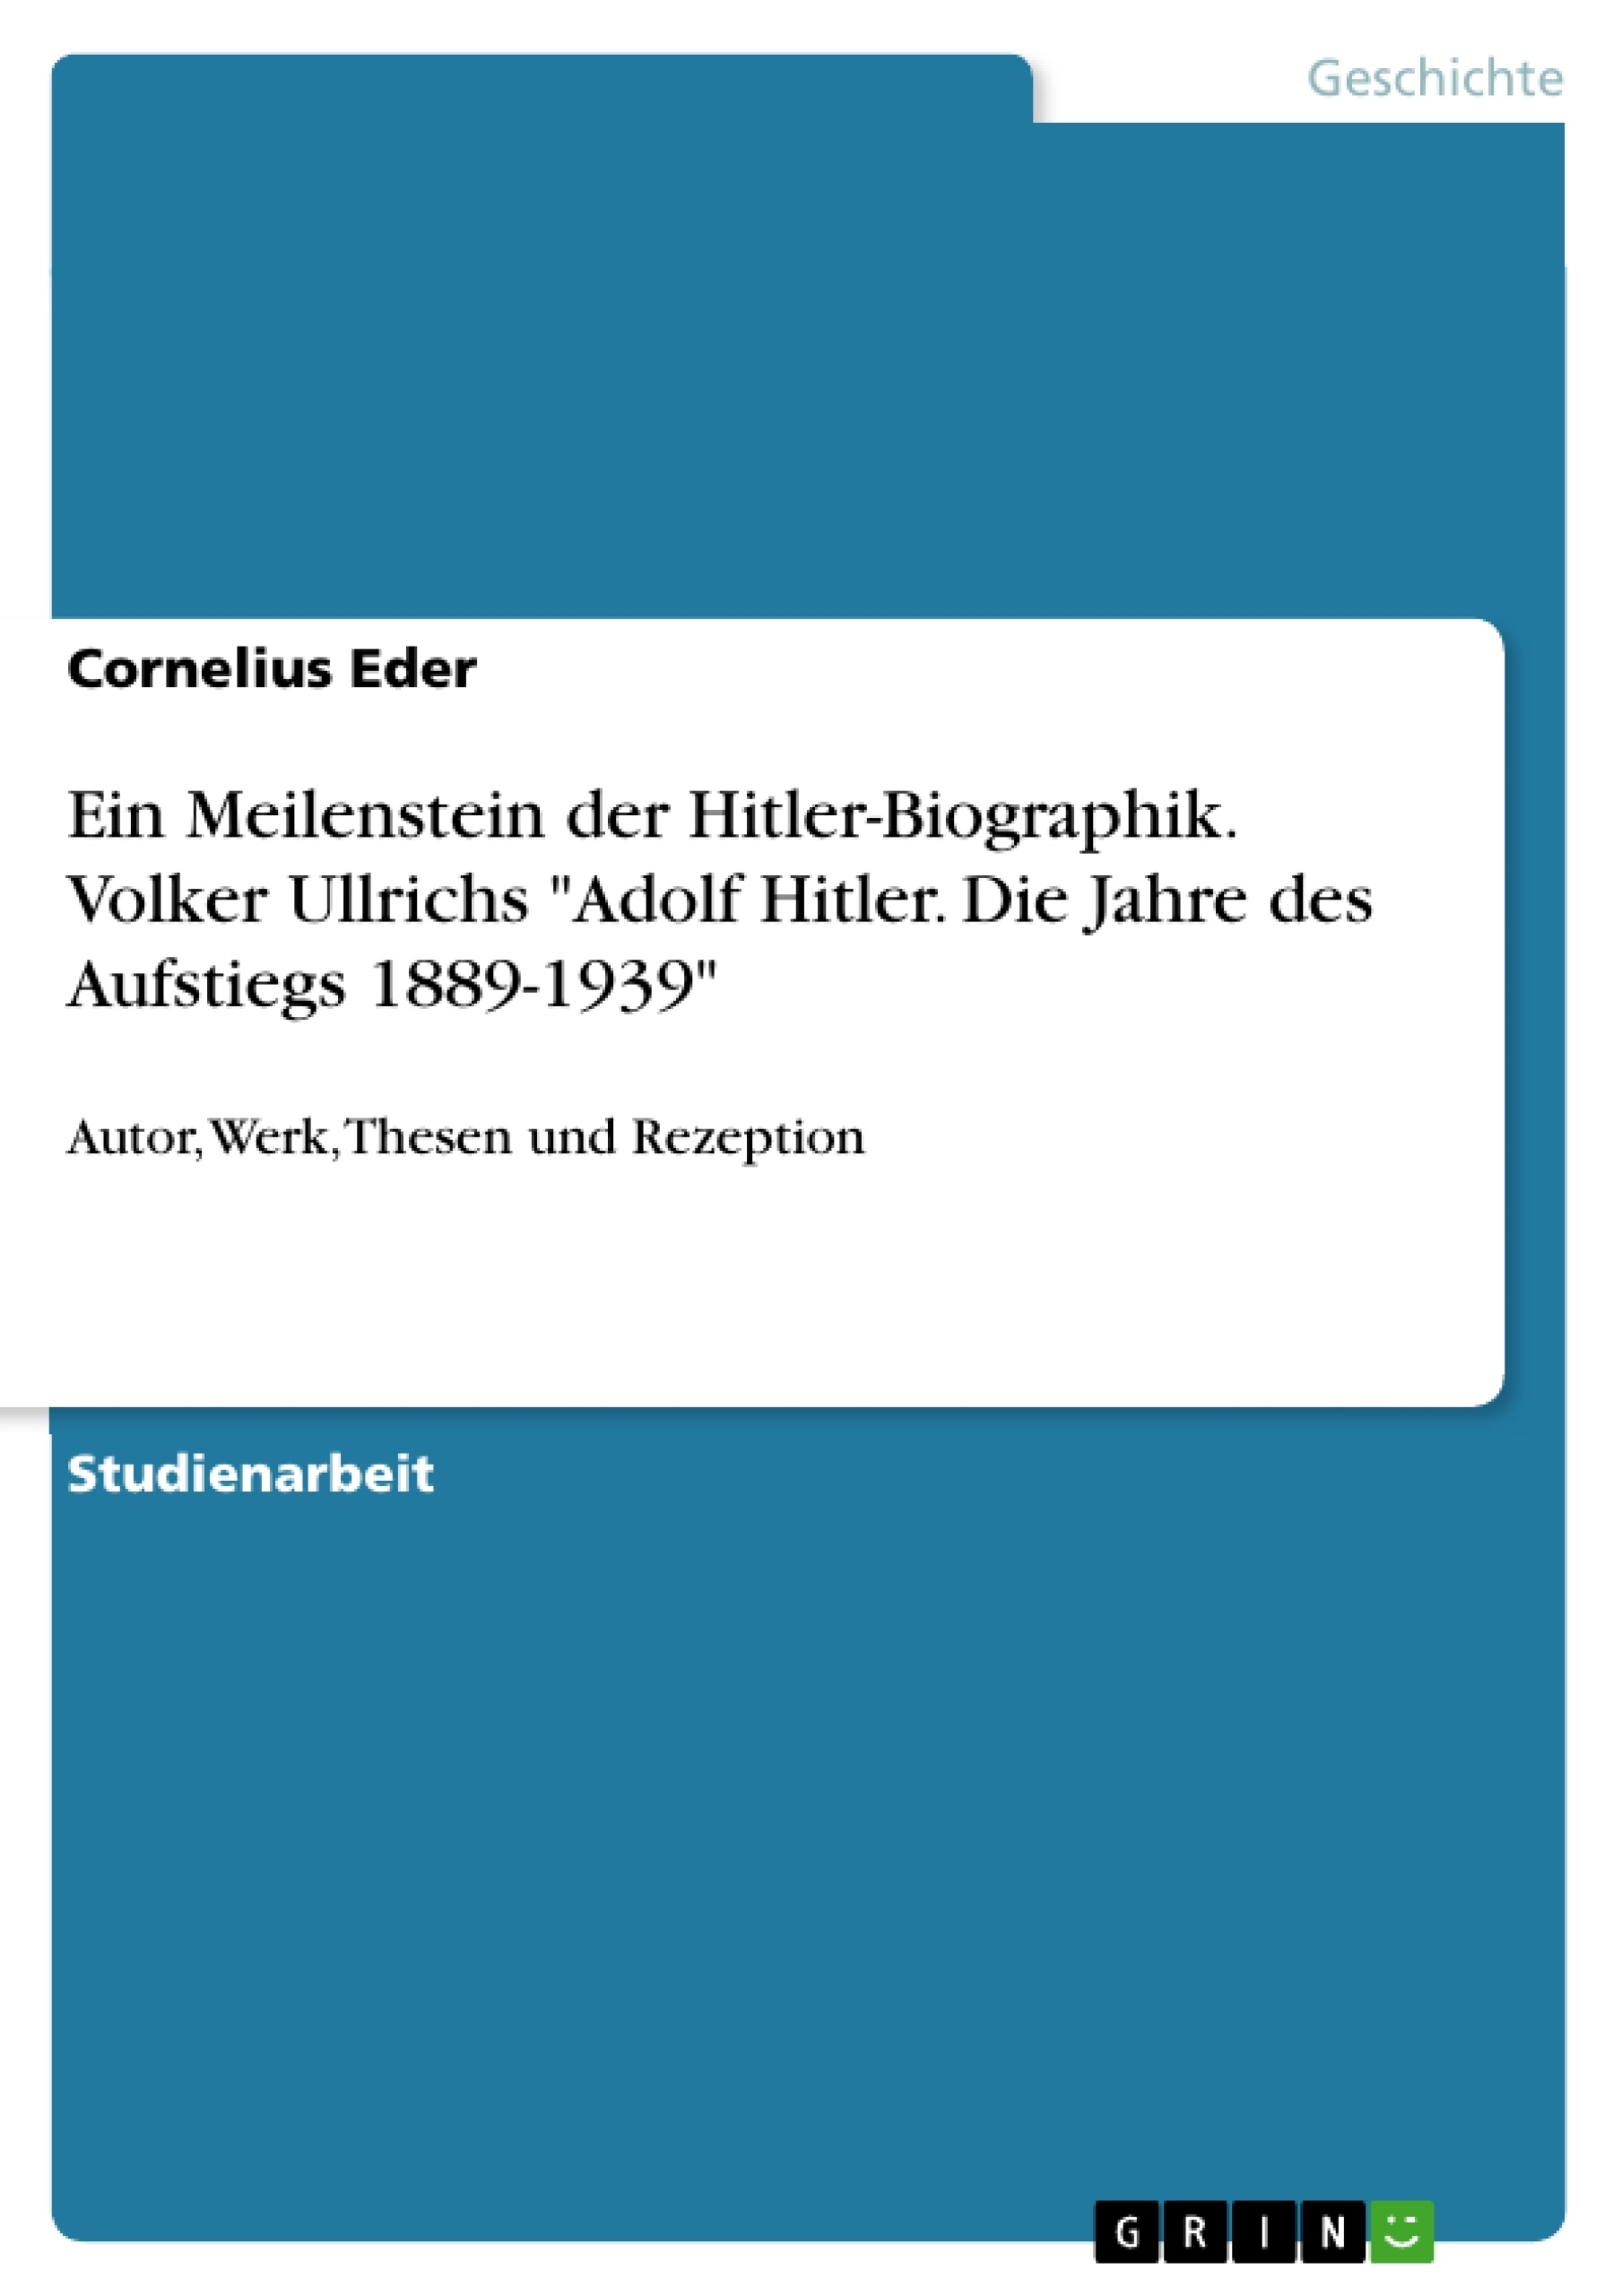 Title: Ein Meilenstein der Hitler-Biographik. Volker Ullrichs "Adolf Hitler. Die Jahre des Aufstiegs 1889-1939"